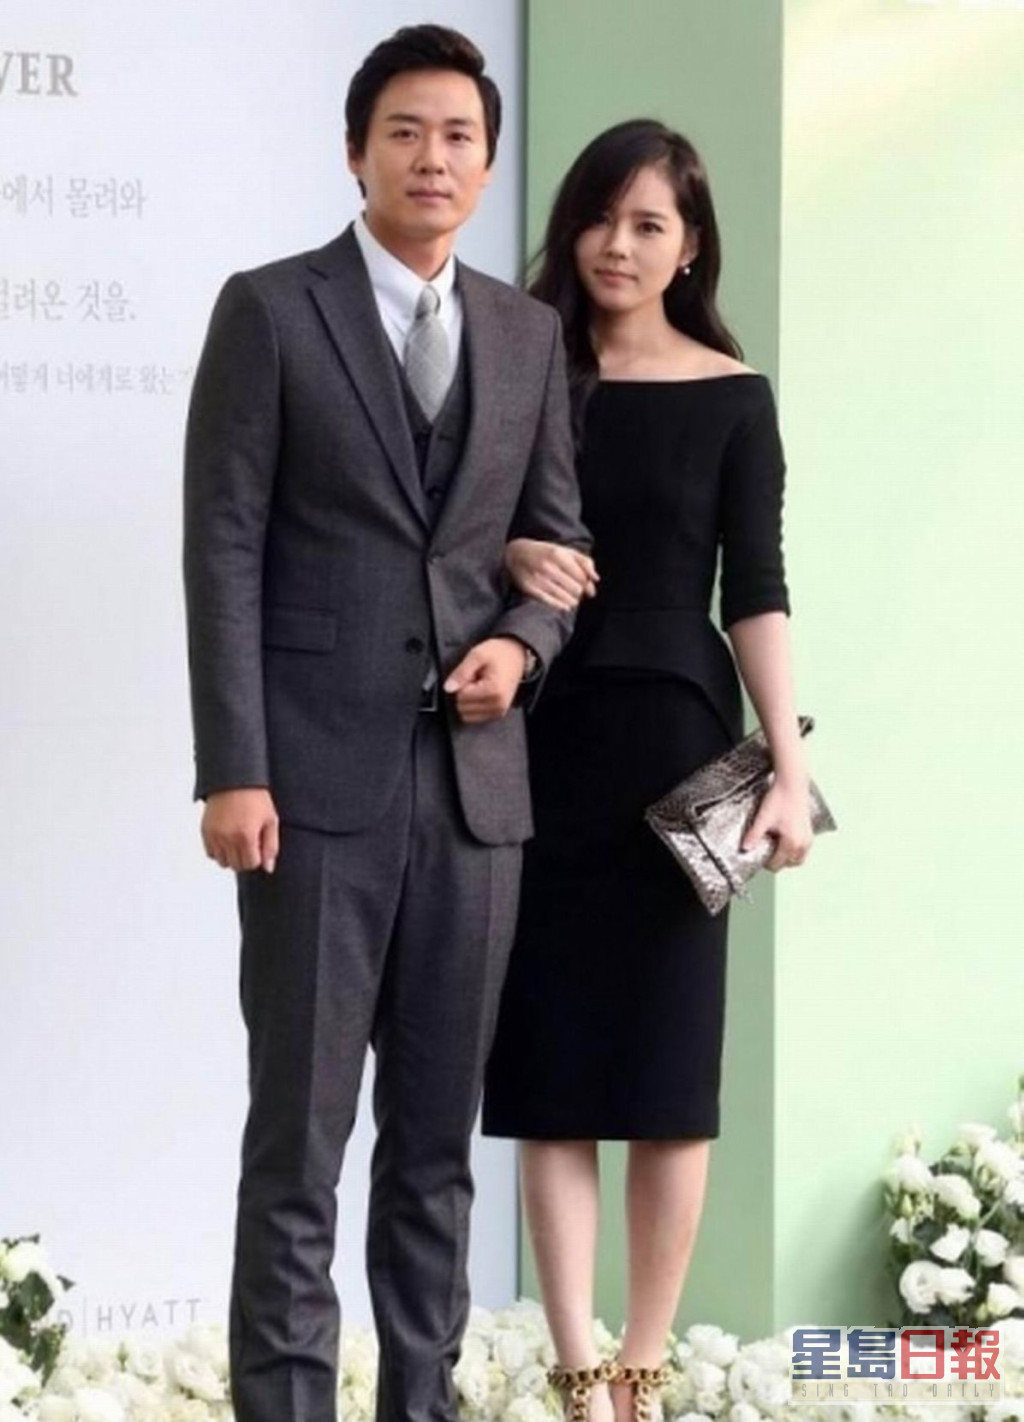 延政勋与韩佳人是韩国演艺界恩爱夫妻典范。